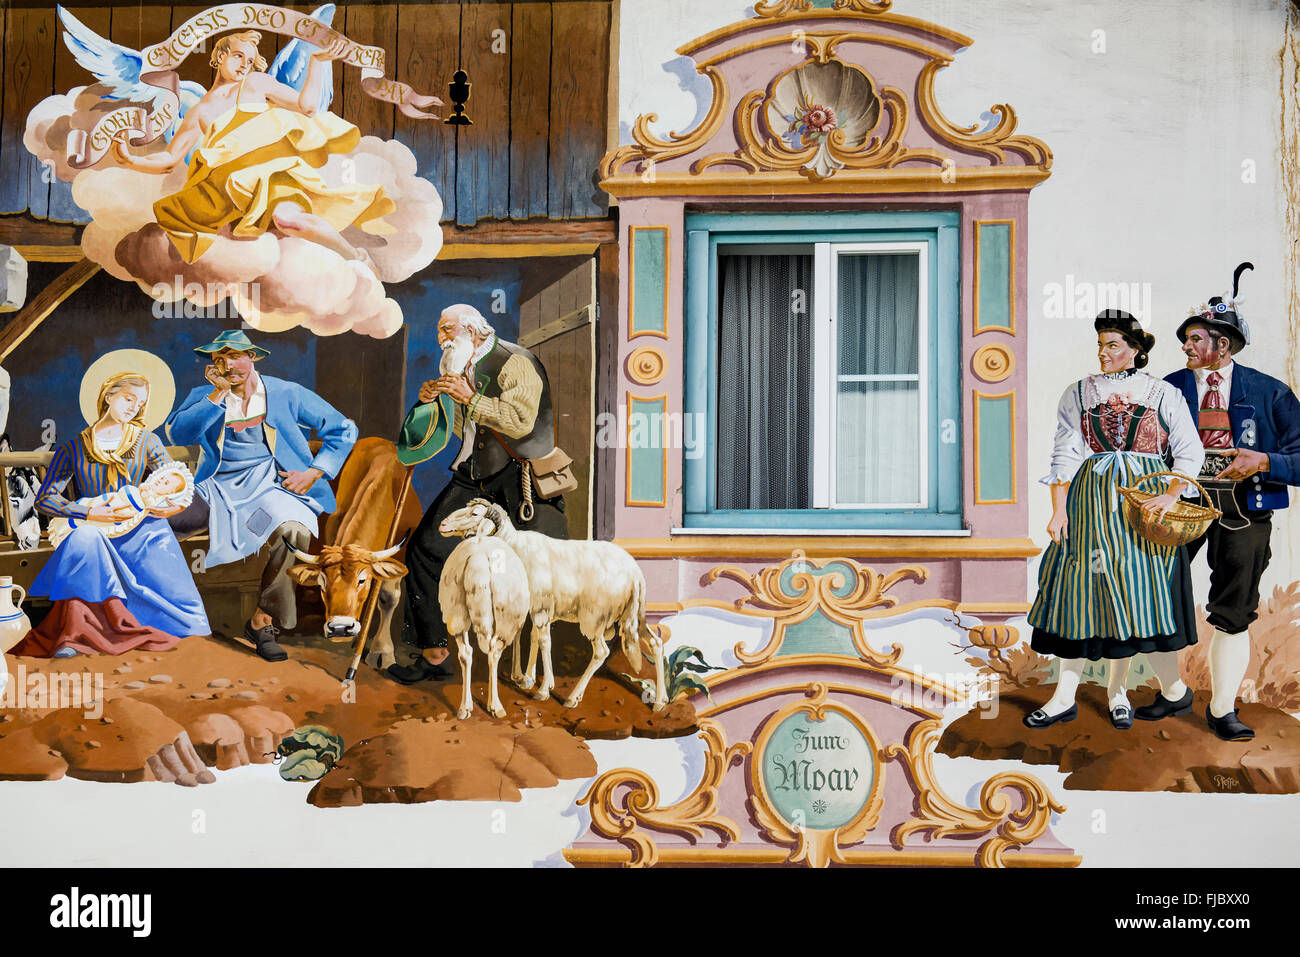 Lüftlmalerei pittura ad affresco che ornano la facciata di una casa, dettaglio, Garmisch-Partenkirchen, Alta Baviera, Baviera, Germania Foto Stock